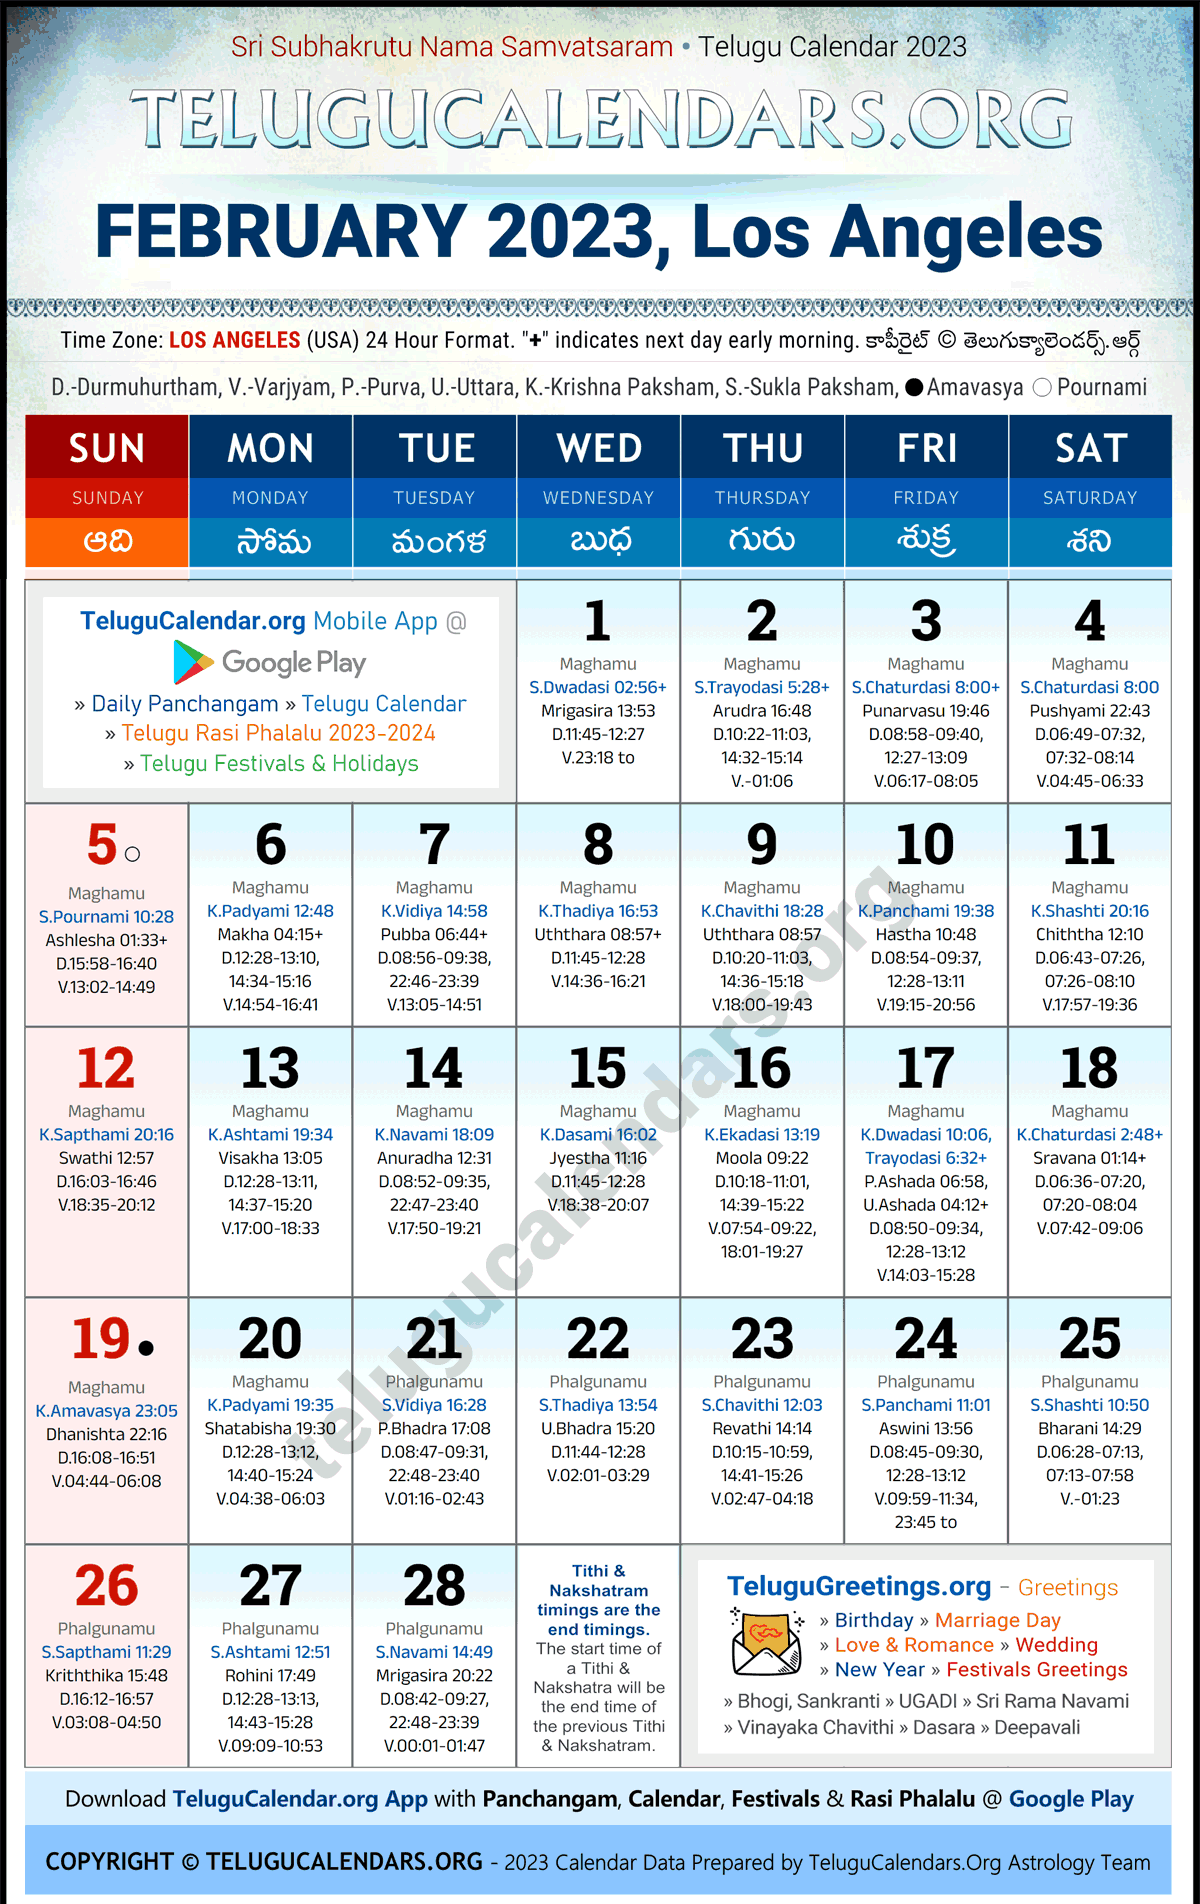 Telugu Calendar 2023 February Festivals for Los Angeles